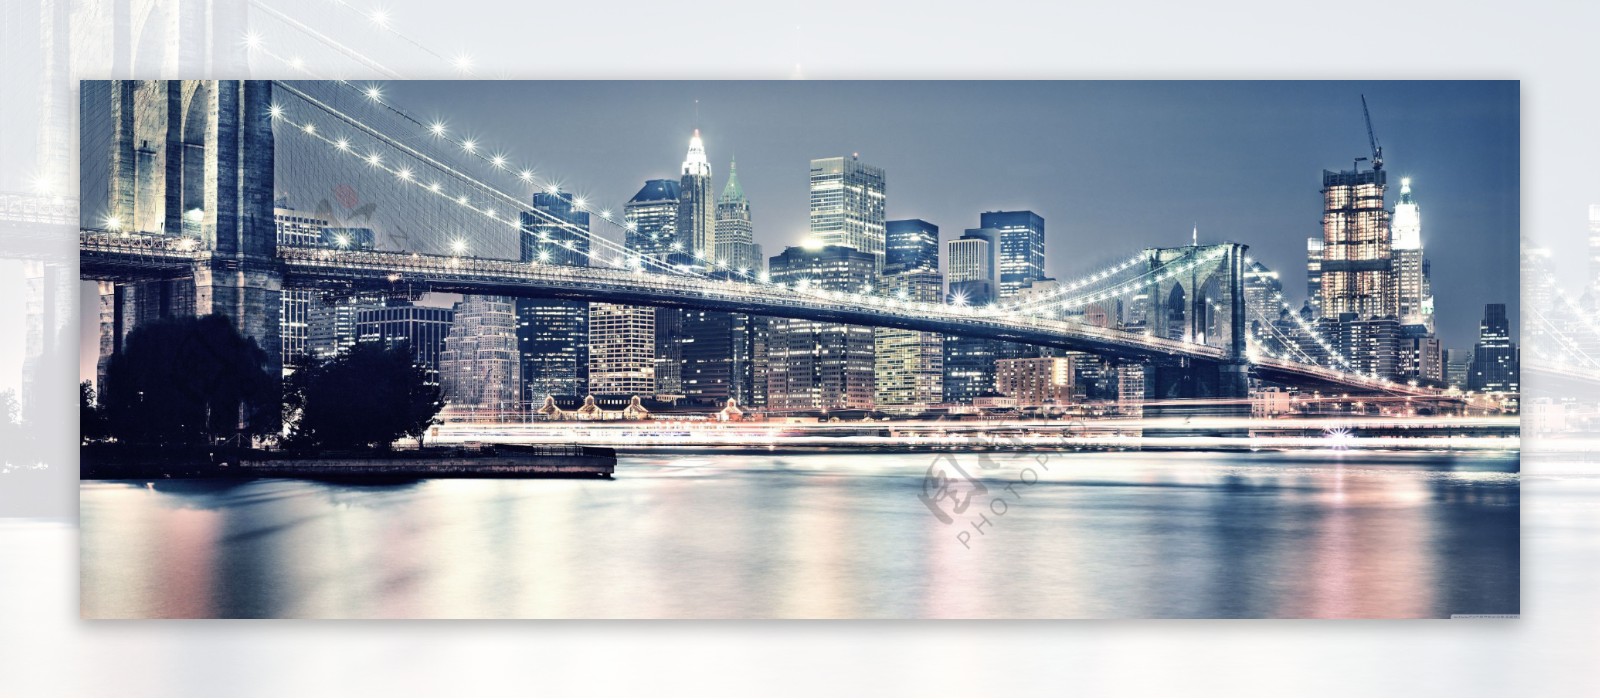 布鲁克林大桥美丽夜景图片